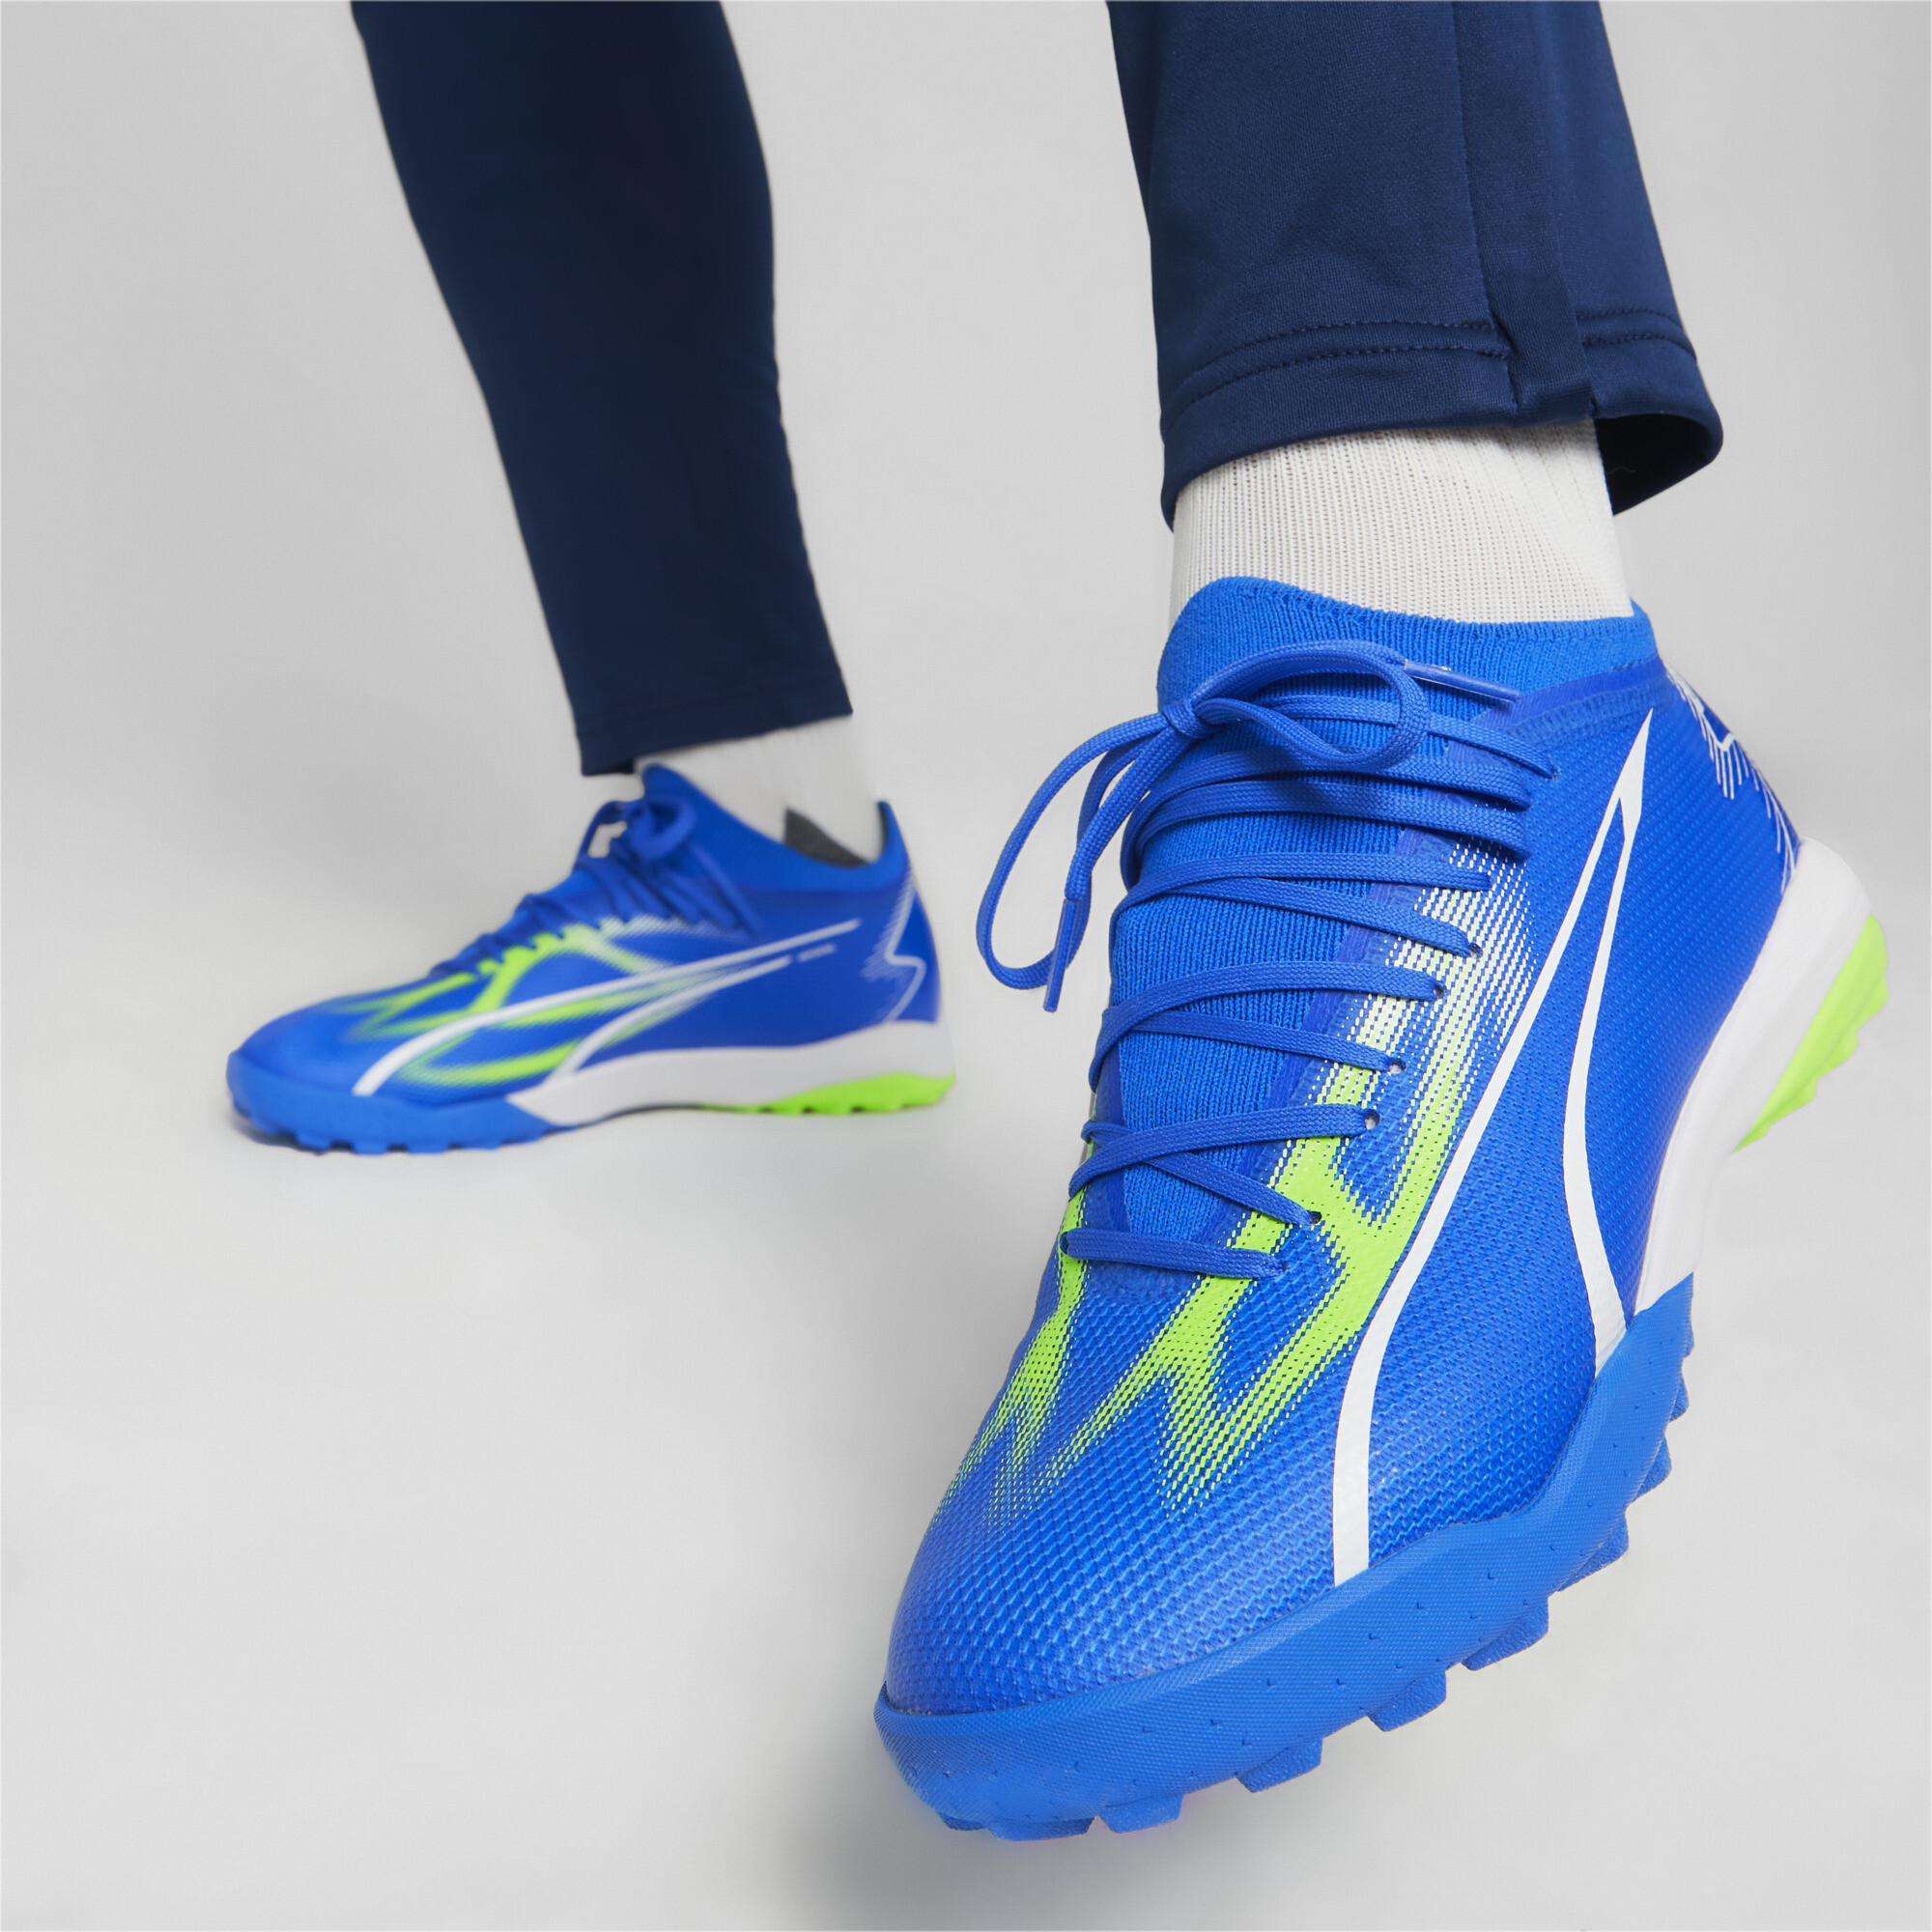 Men's PUMA ULTRA MATCH TT Football Boots In Blue, Size EU 41